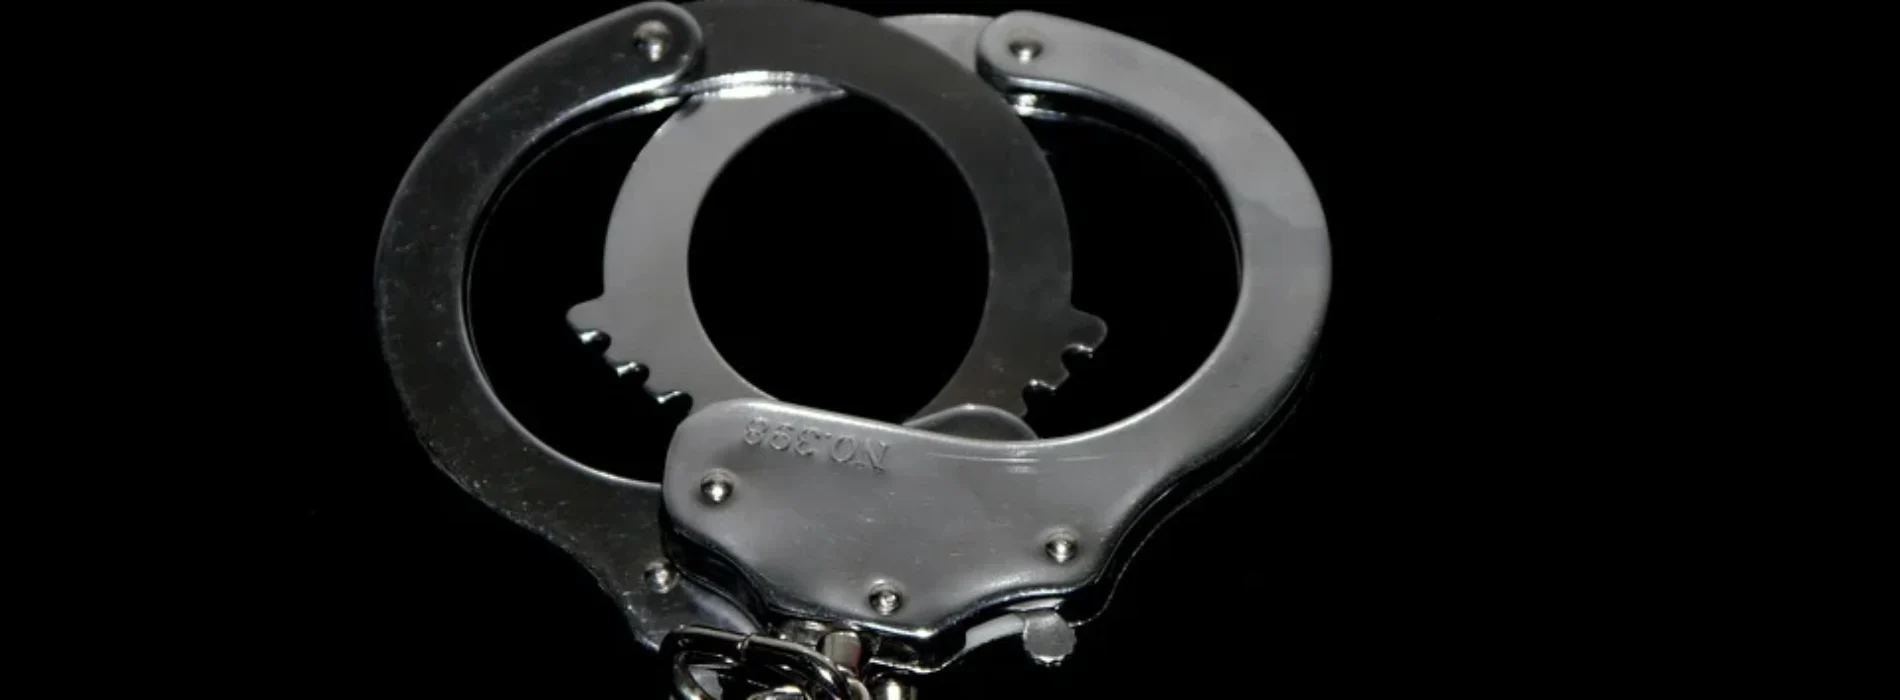 34-latek podejrzany o czyn o charakterze pedofilskim został aresztowany